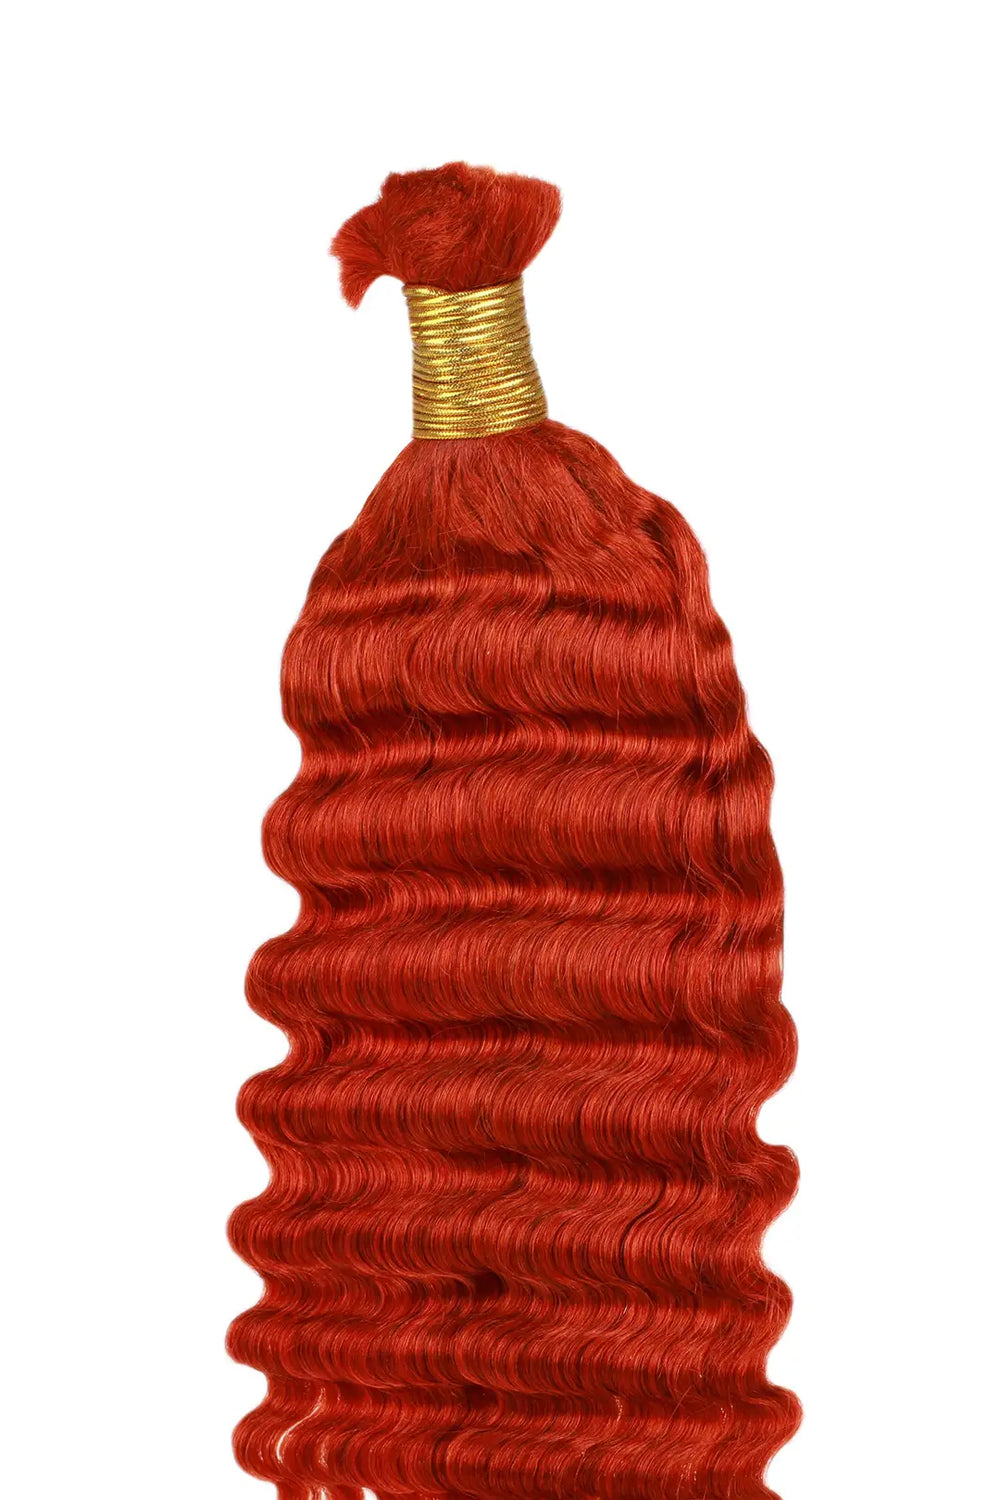 Copper Red Deep Wave Bulk Human Hair For Braiding BU23 - 1